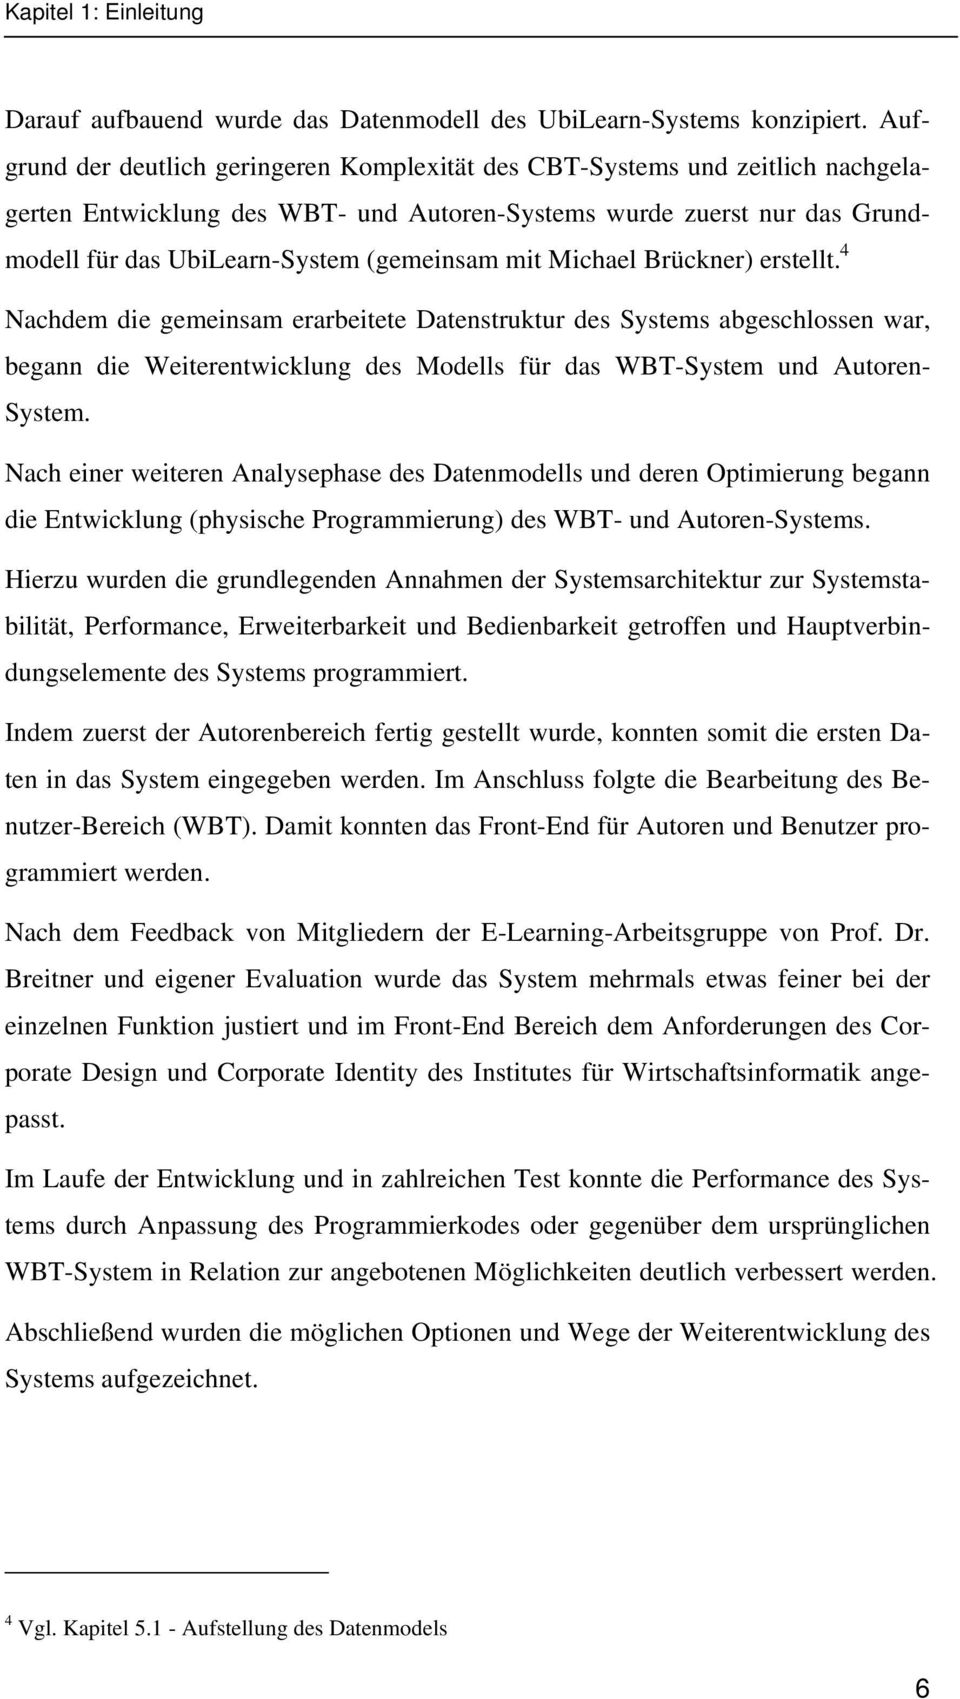 mit Michael Brückner) erstellt.tp 4 PT Nachdem die gemeinsam erarbeitete Datenstruktur des Systems abgeschlossen war, begann die Weiterentwicklung des Modells für das WBT-System und Autoren- System.